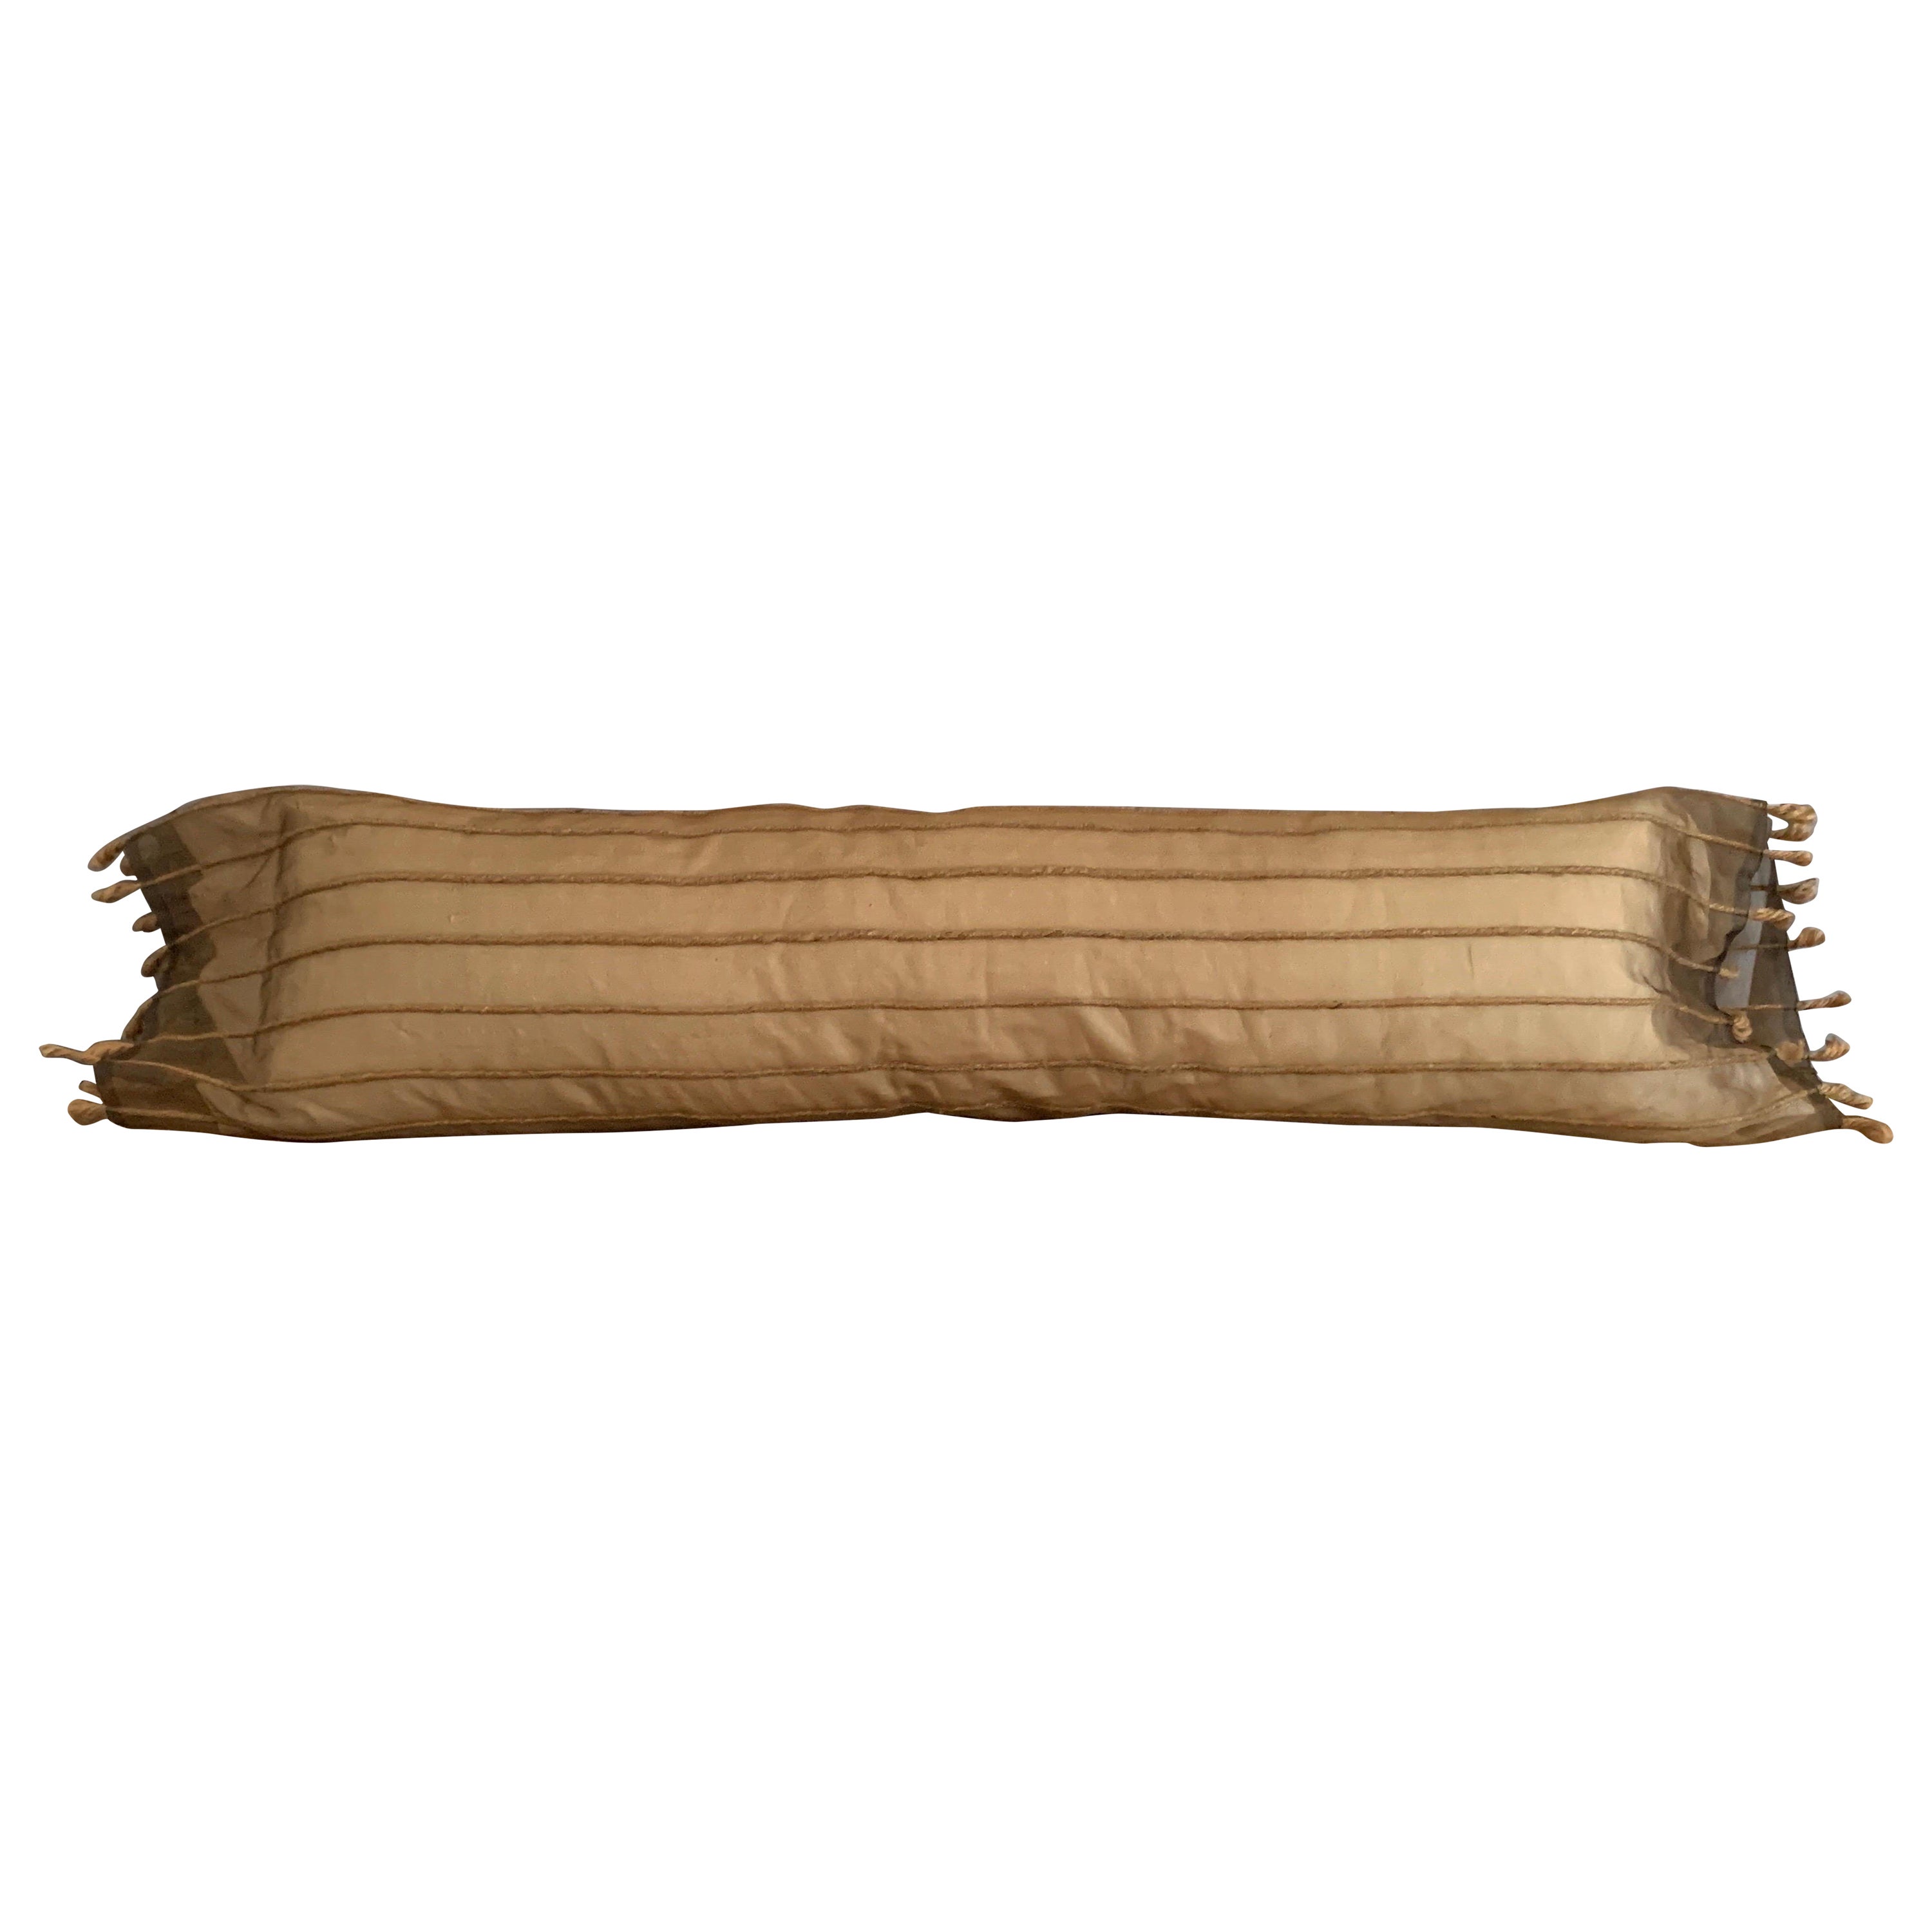 Besticktes langes Body Roll-Kissen aus Rohseide und Organza aus Luxe Bedding Set  